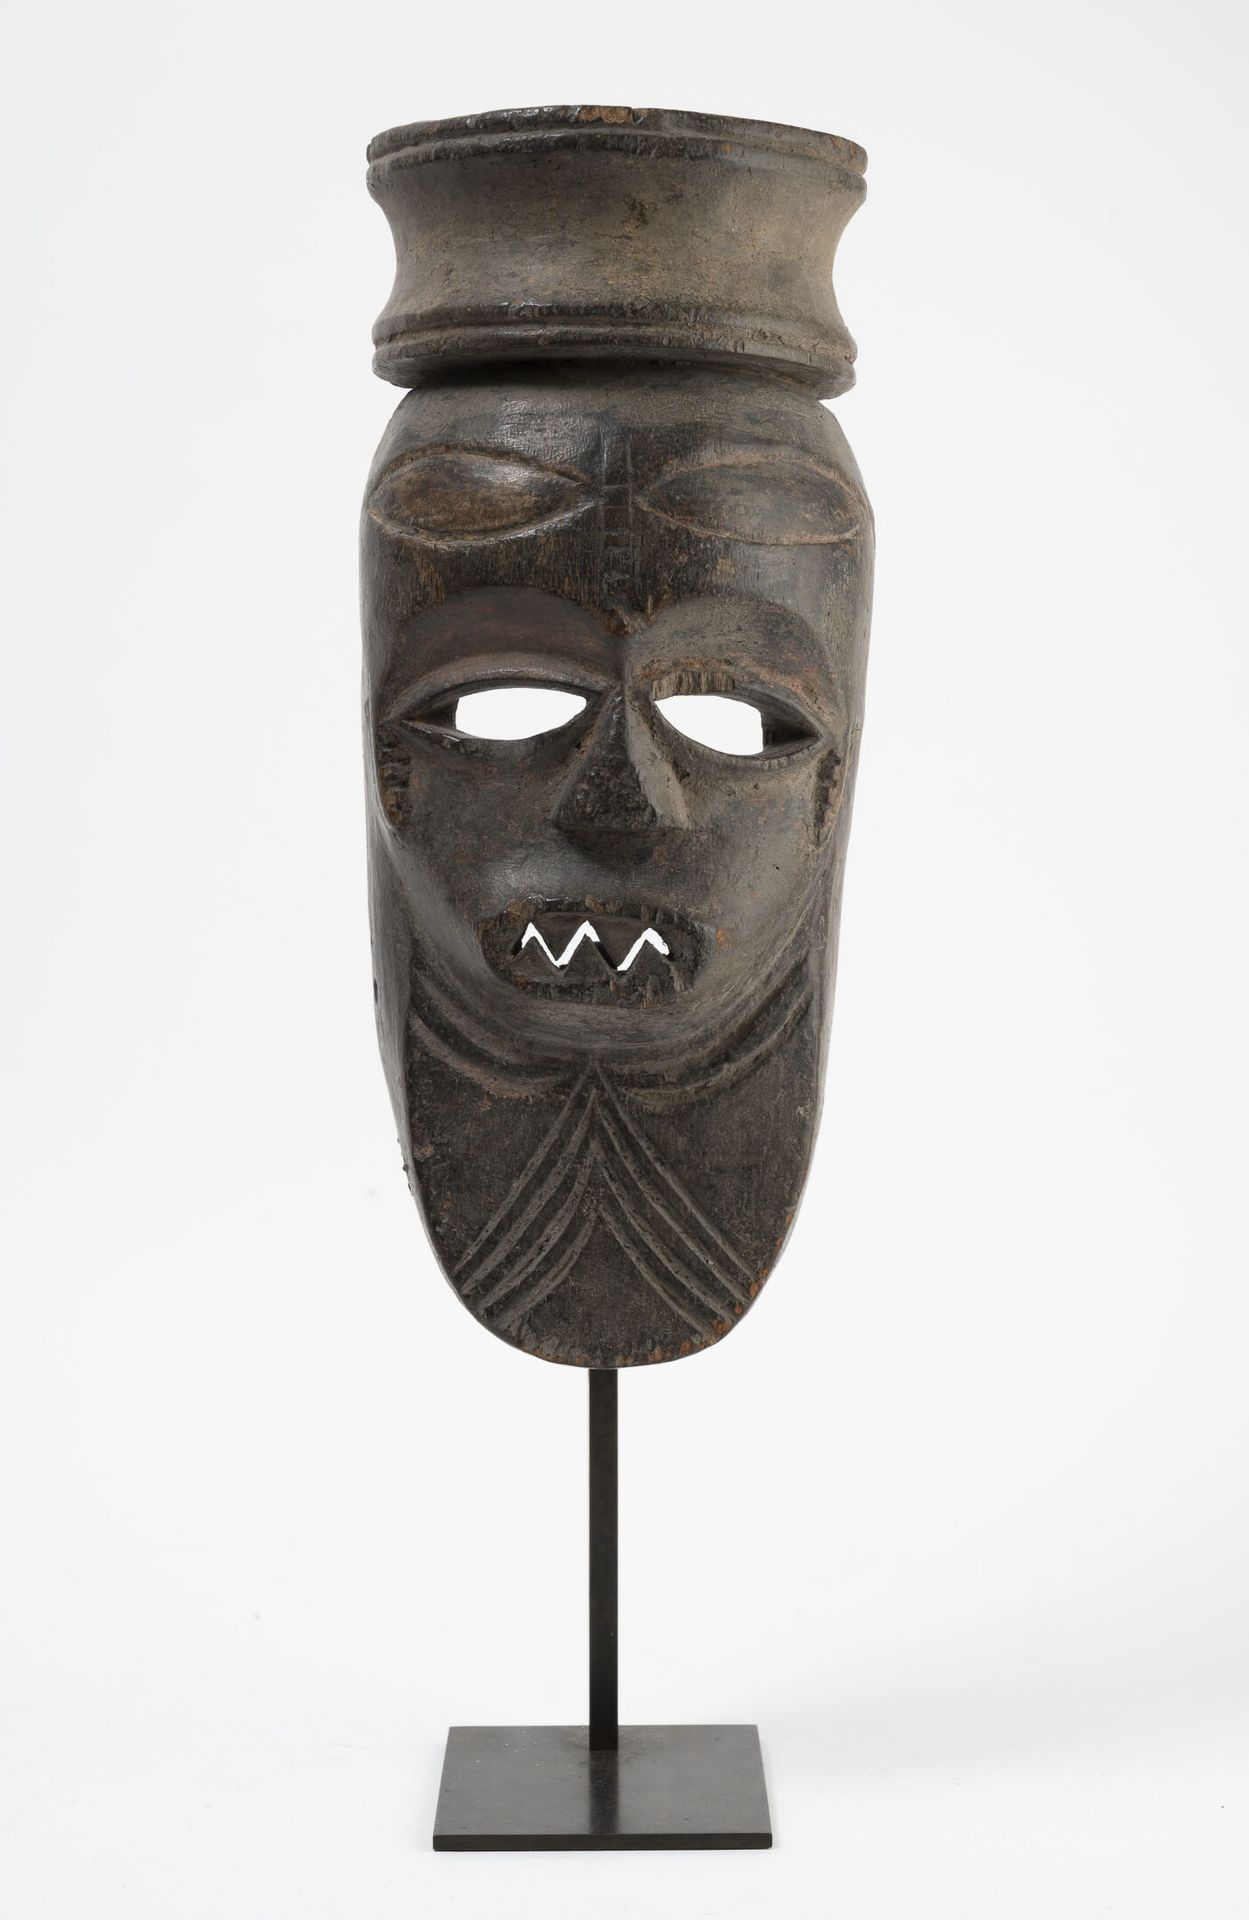 CÔTE D'IVOIRE Masque en bois sculpté et patiné.

Socle.

H. : 31 cm.

H. Totale &hellip;